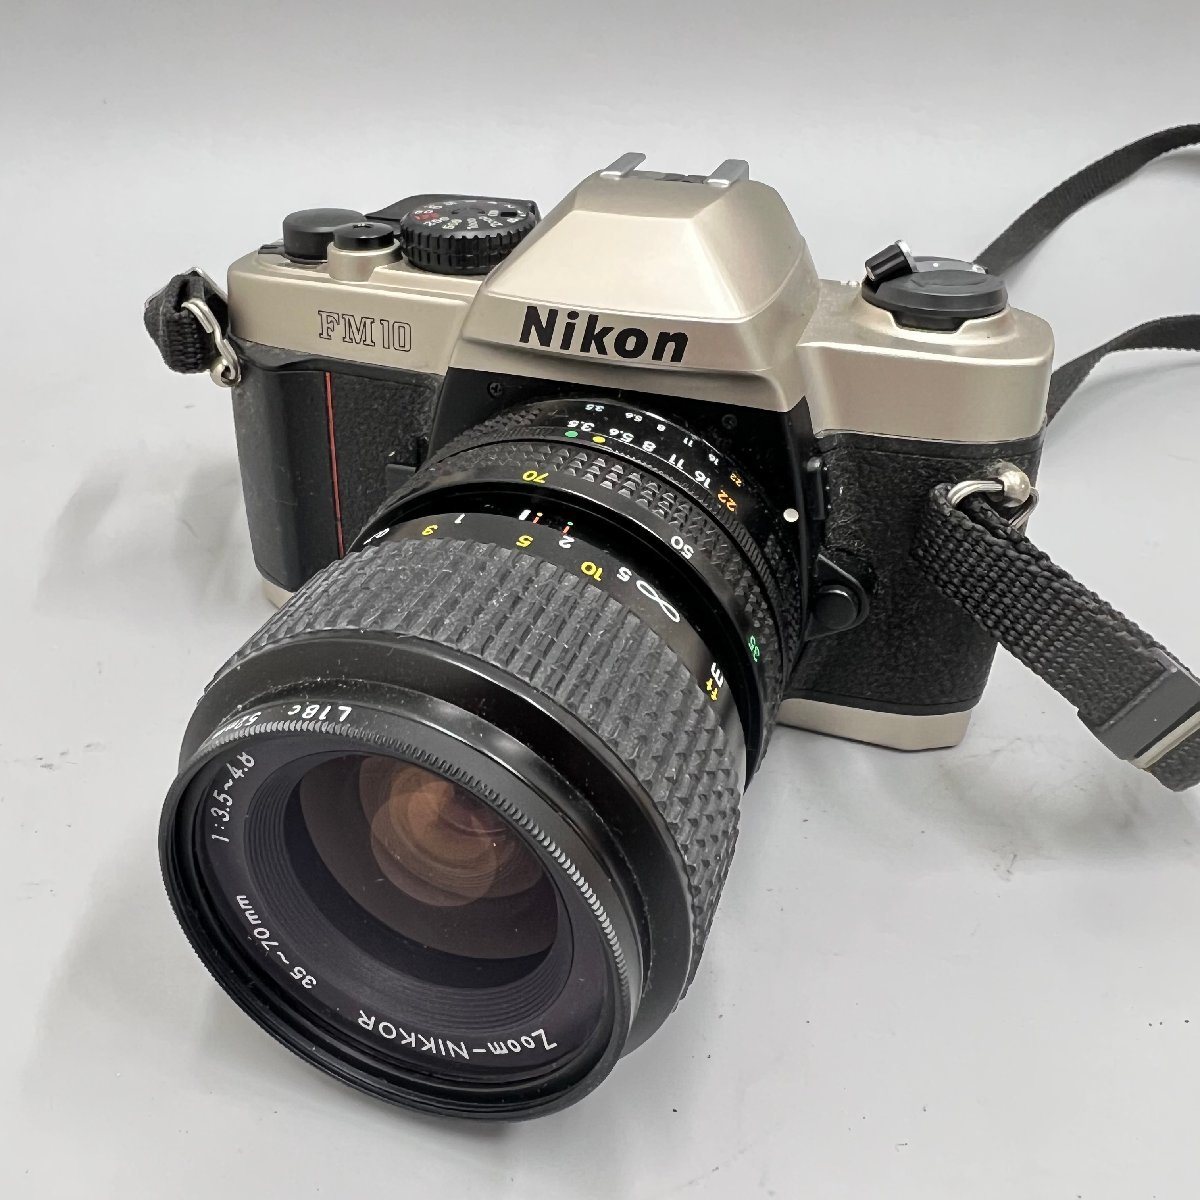 新着商品 ○○[9] Nikon ニコン FM10 NIKKOR レンズ 35-70mm 1:3.5-4.8